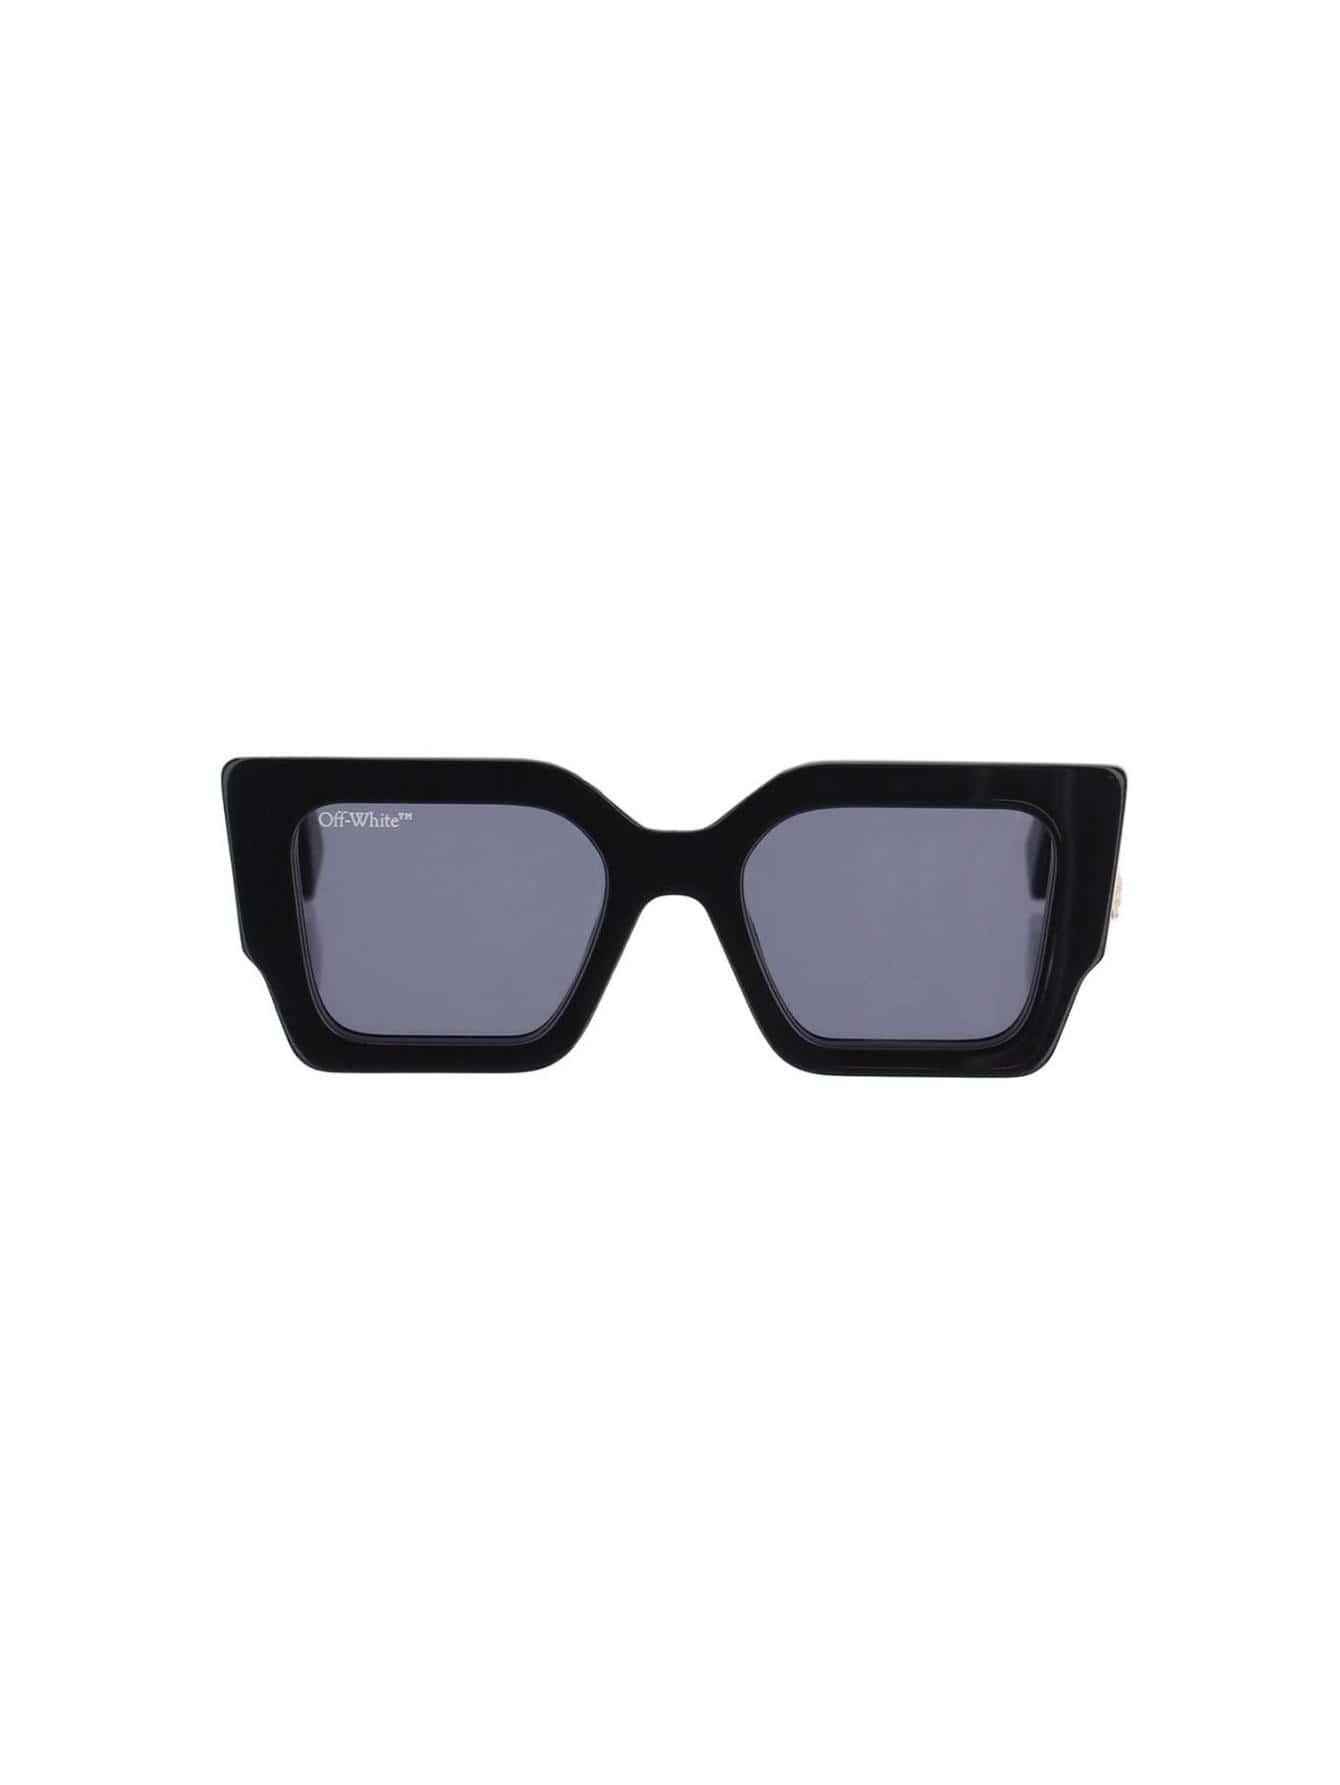 зеленые солнцезащитные очки manchester off white Женские солнцезащитные очки Off-White ЧЕРНЫЕ OERI003C99PLA0011007, черный